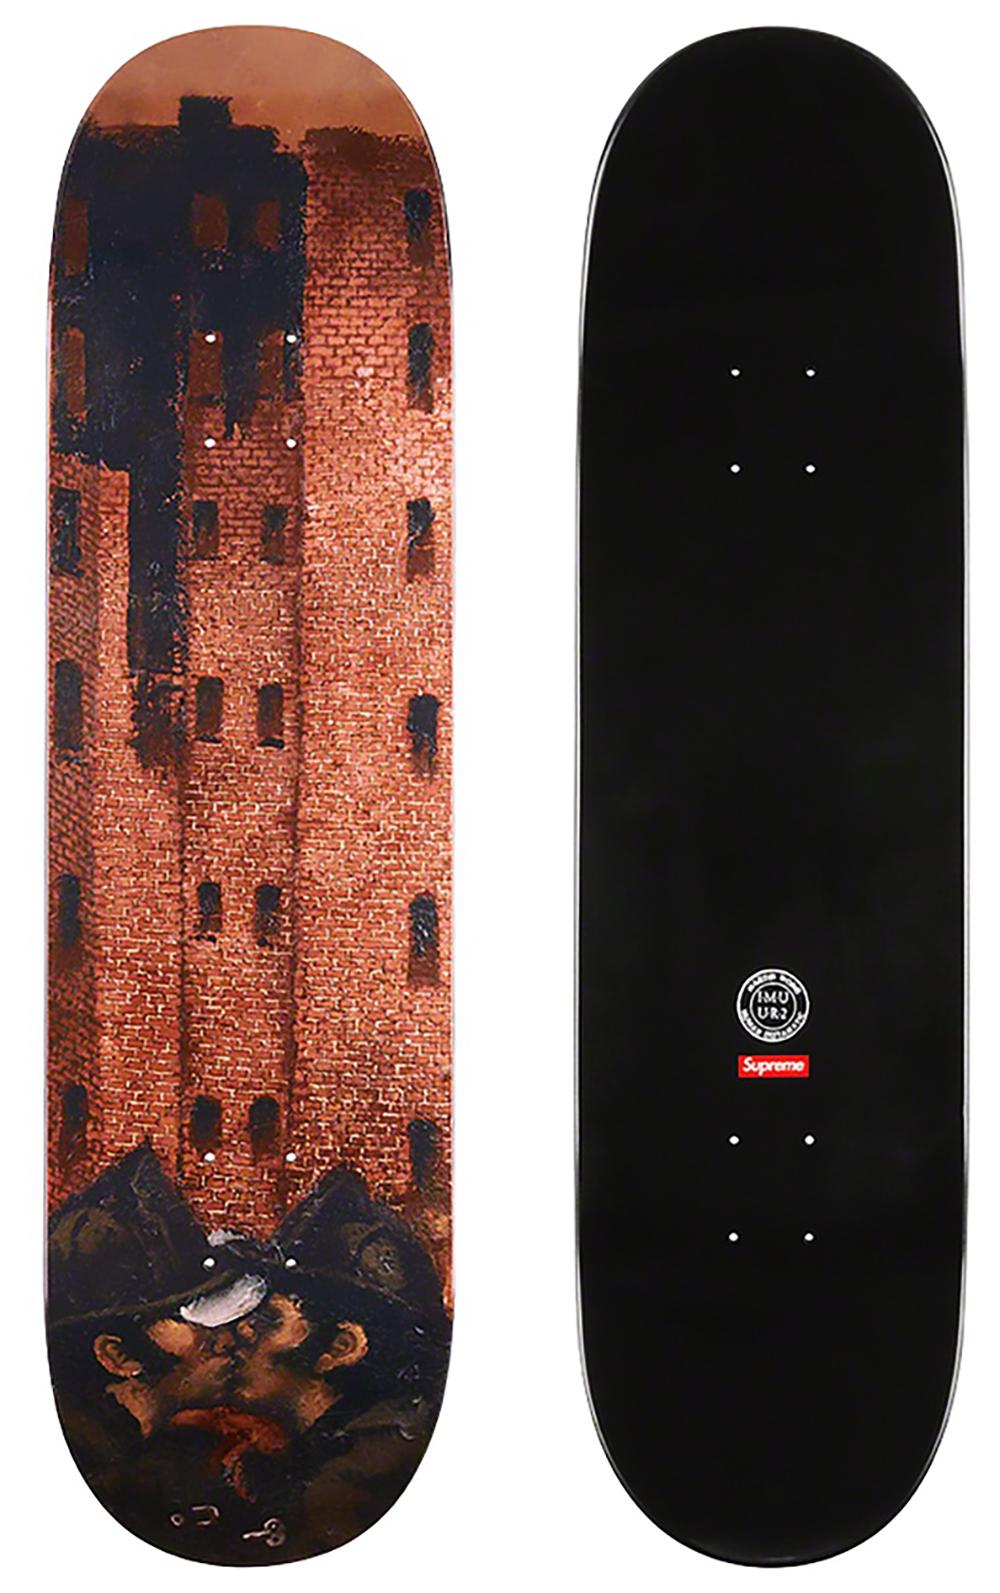 Martin Wong Big Heat skateboard deck (Martin Wong Supreme), 2019 For Sale 1